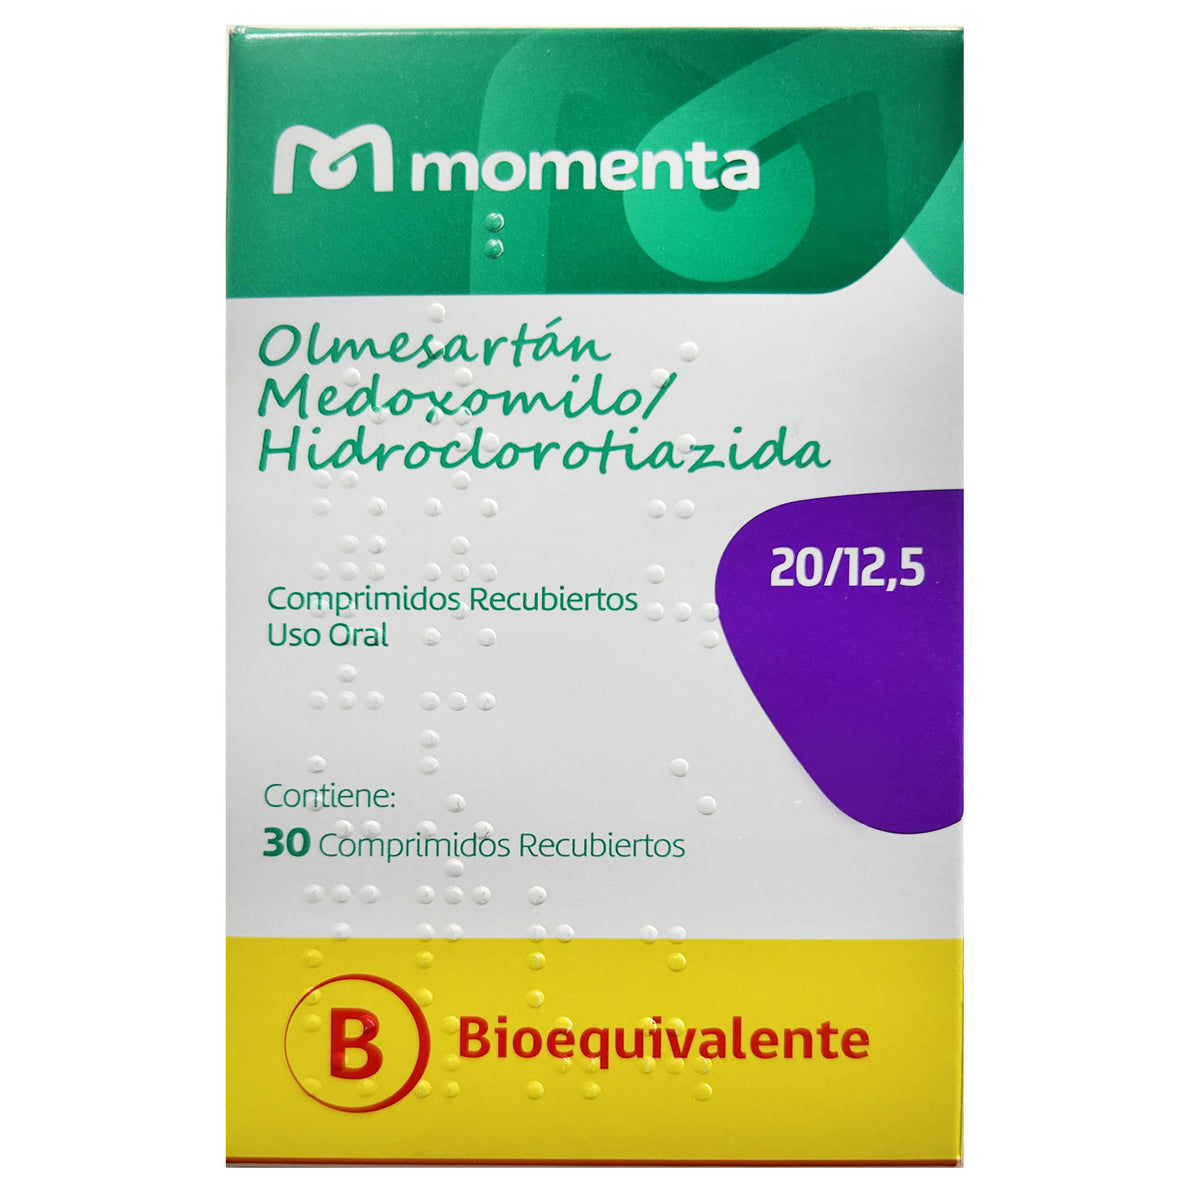 Olmesartán/Hidroclorotiazida Comprimidos Recubiertos 20/12,5